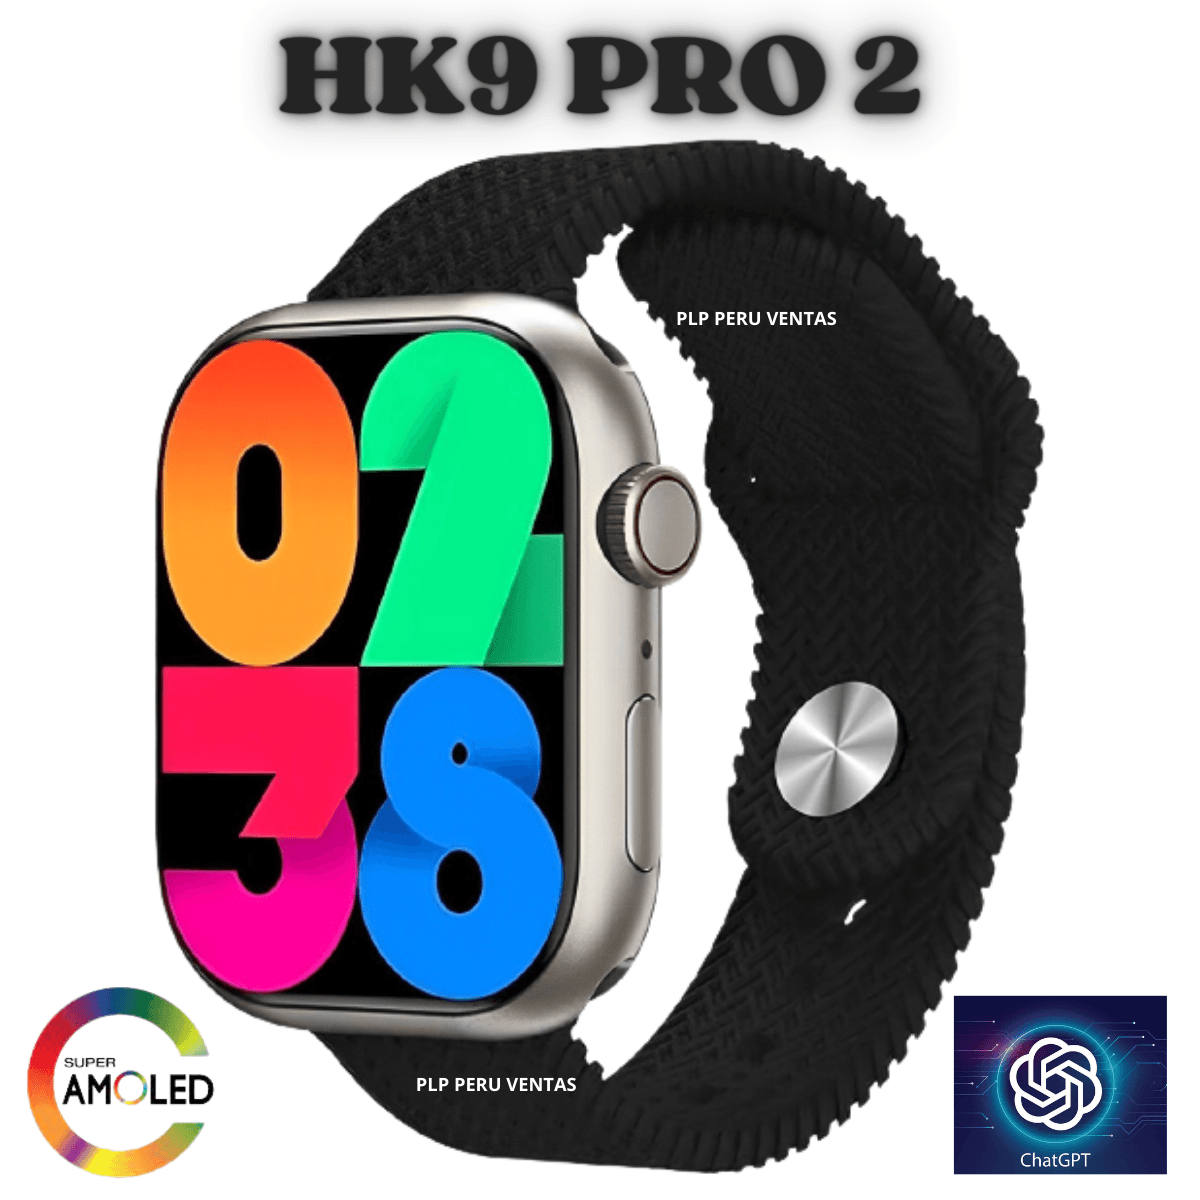 Smartwatch Hk9 Pro 2 Generacion Chat GPT Amoled Negro